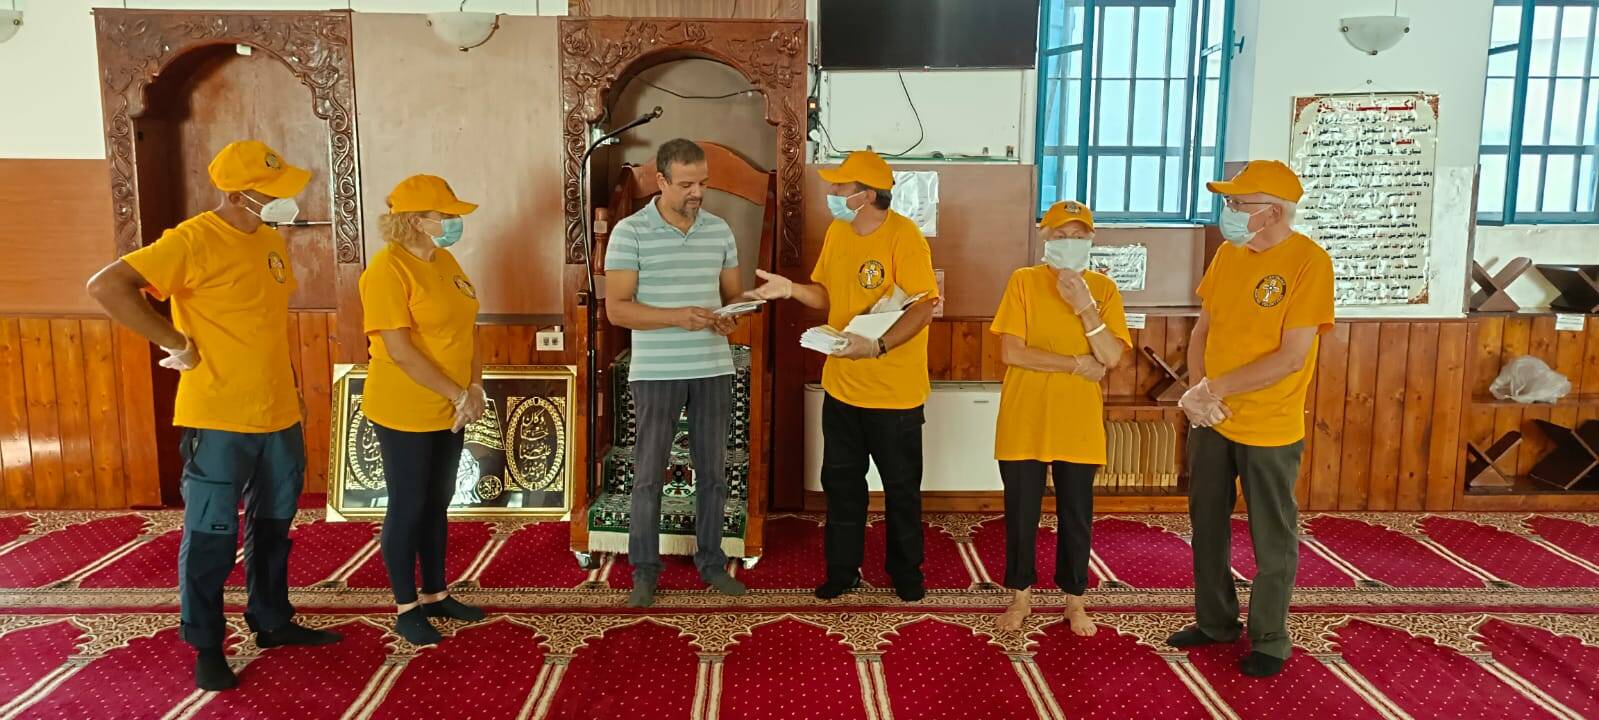 Ministri Volontari di Scientology sanificano la Moschea di Bra